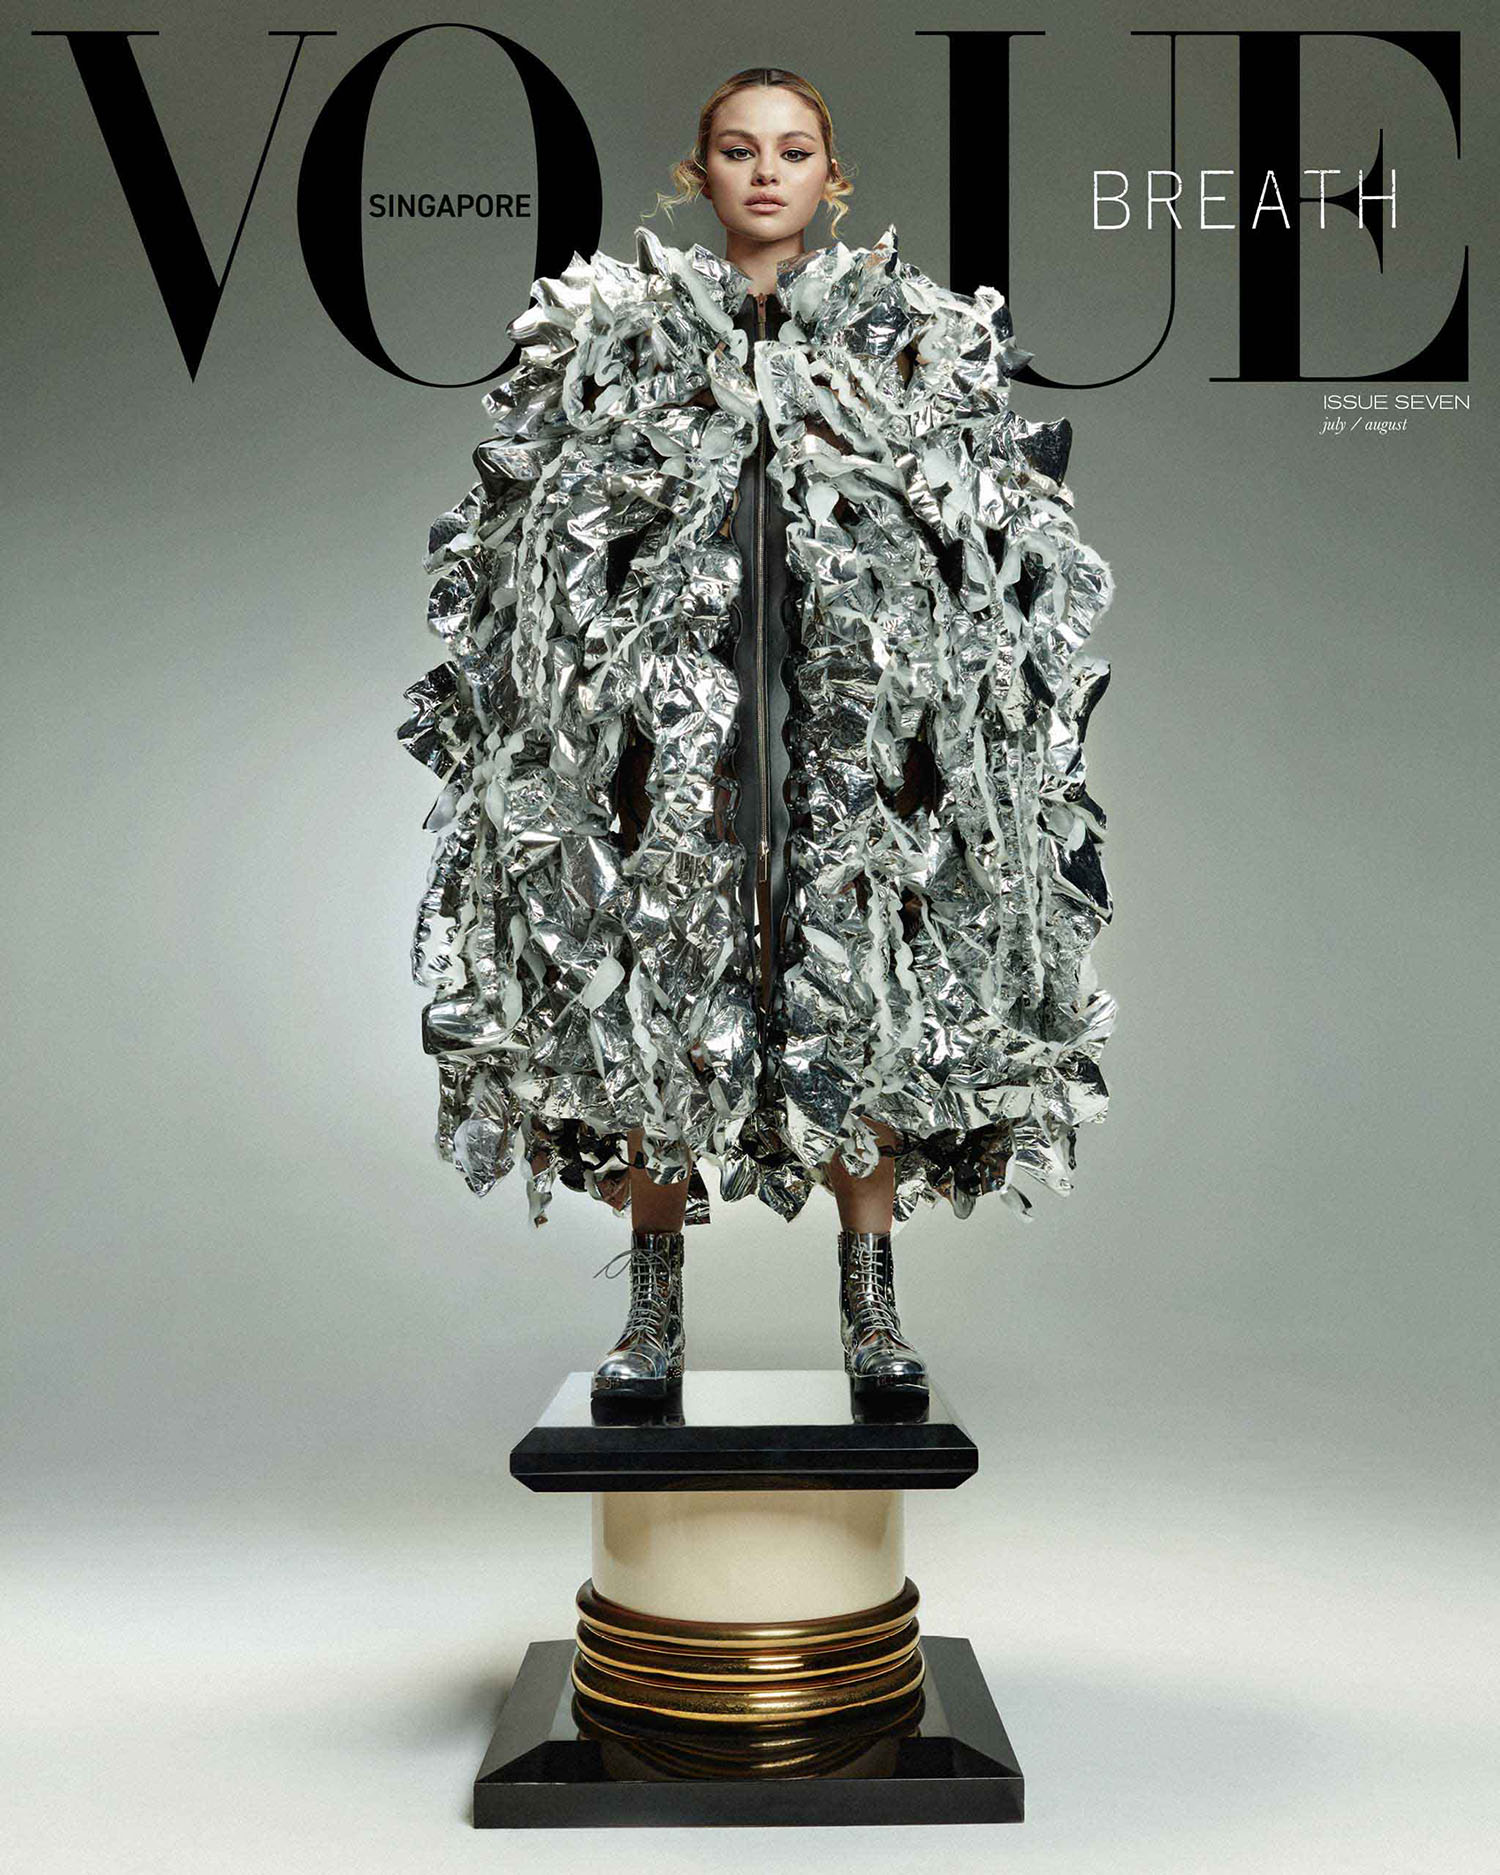 Một lần khác lên bìa Vogue Singapore, nữ ca sĩ lựa chọn trang phục khá dị, tuy nhiên sự high fashion của bức ảnh vẫn được nhiều người khen ngợi.